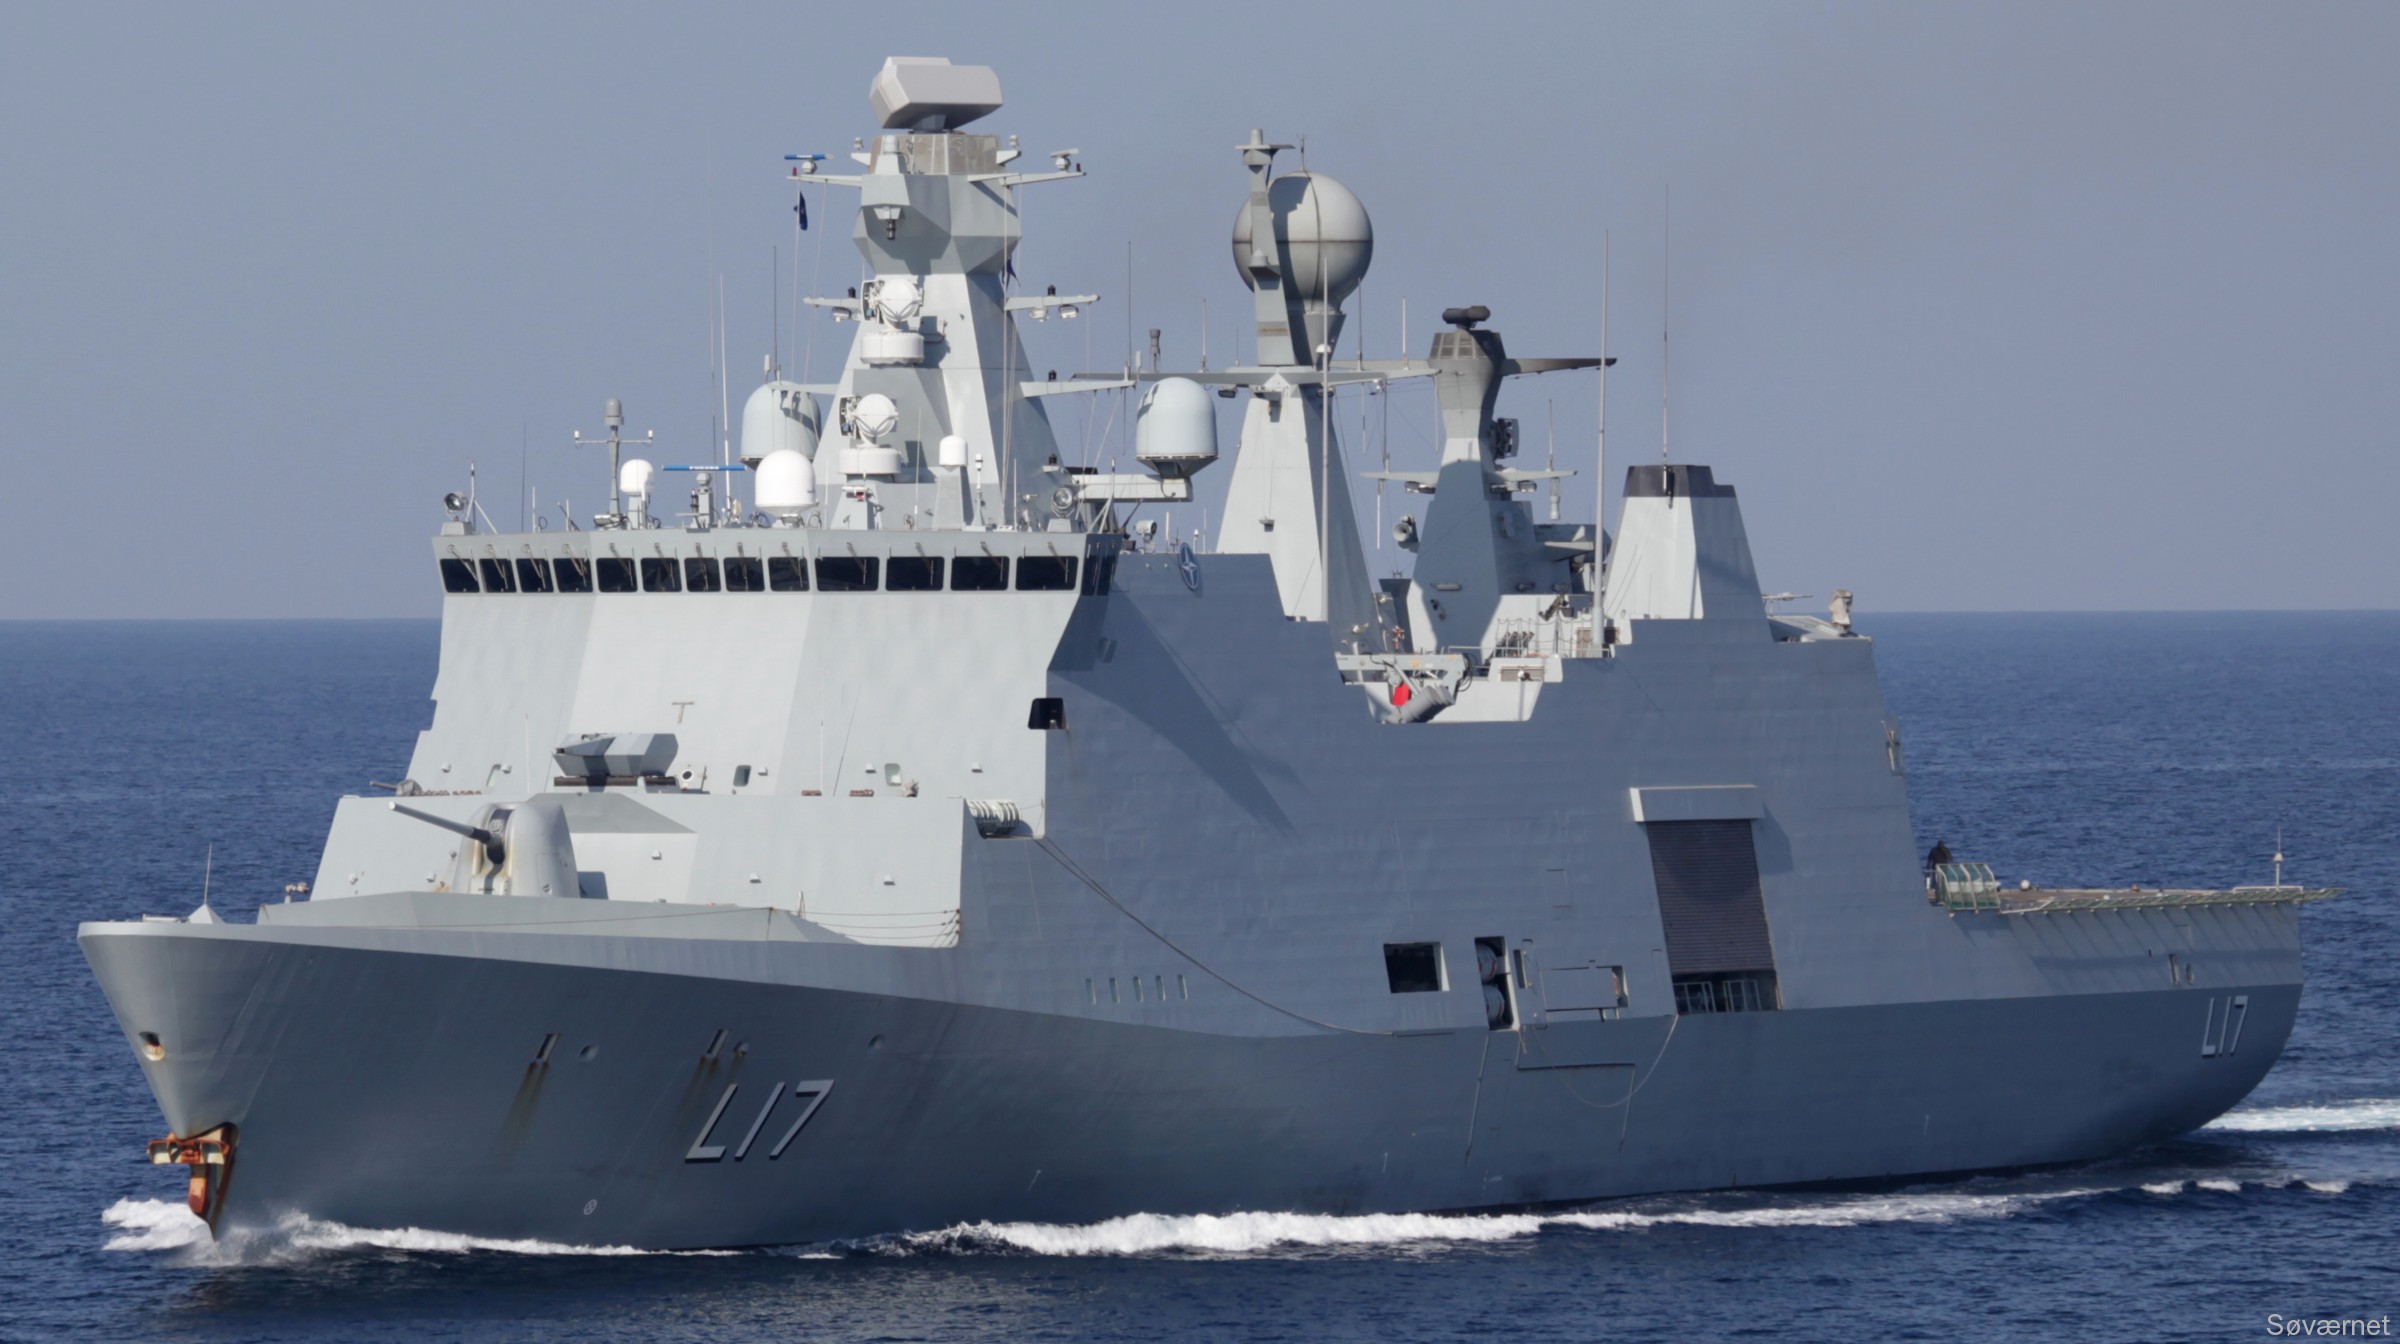 f-342 hdms esbern snare l-17 frigate command support ship royal danish navy 50 odense steel shipyard frederikshavn